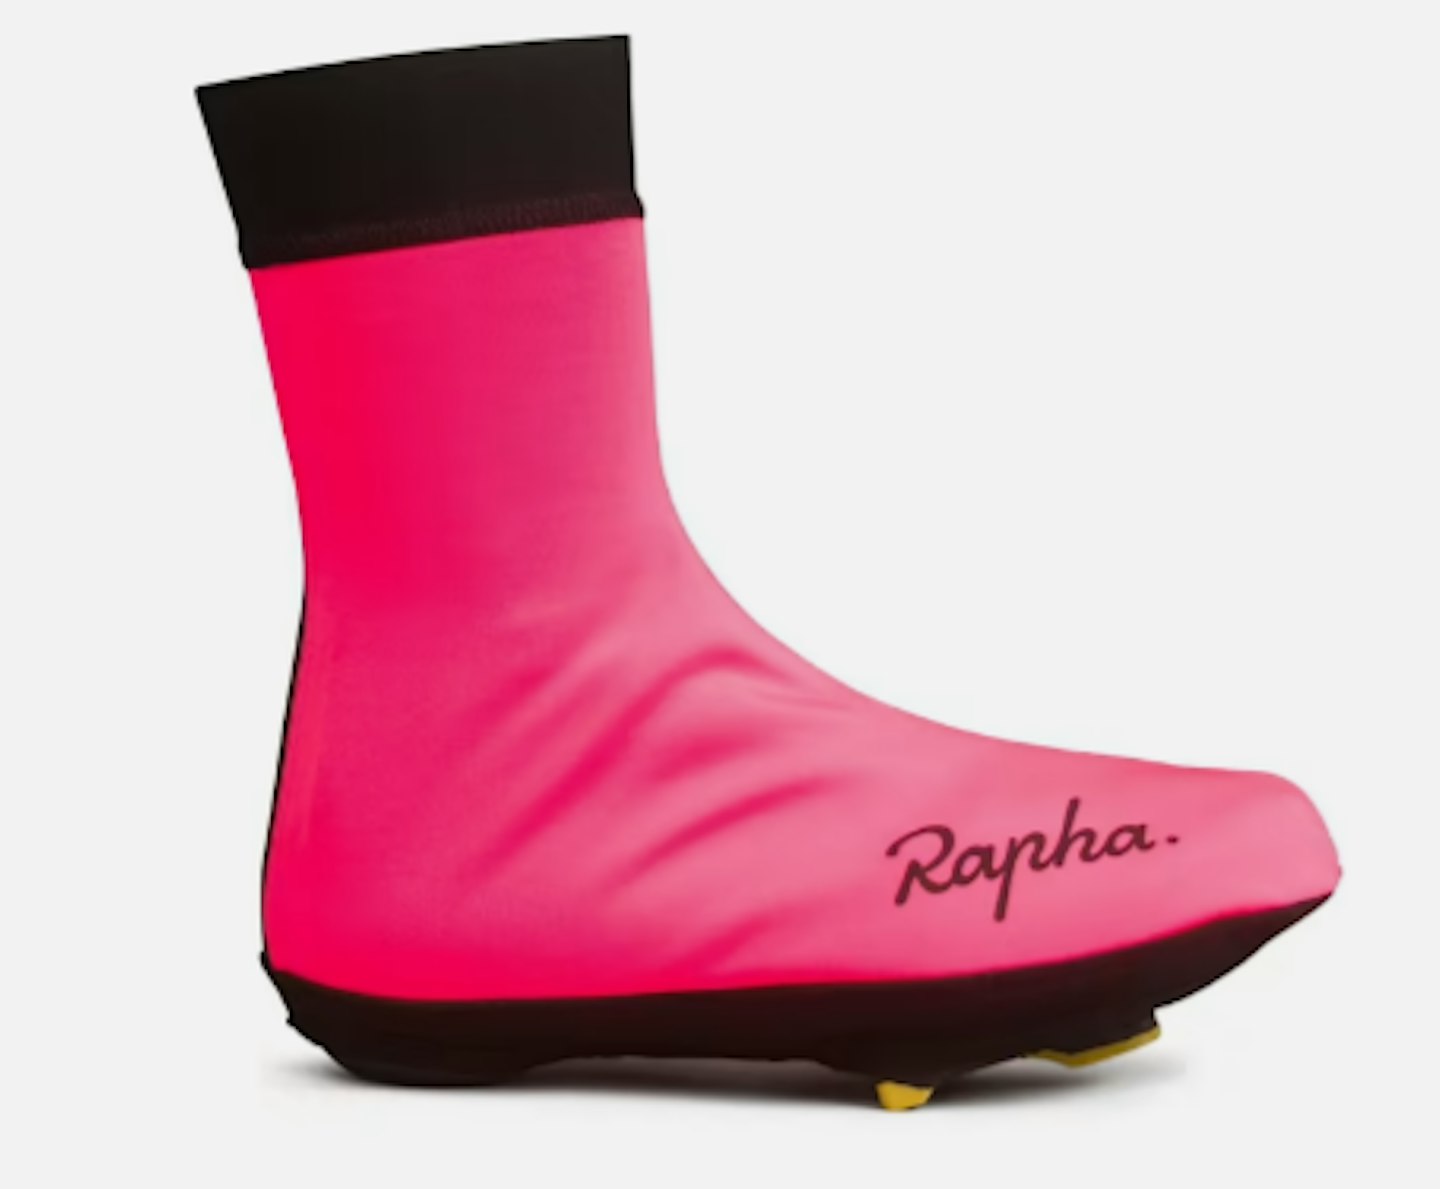 Rapha Winter Overshoes